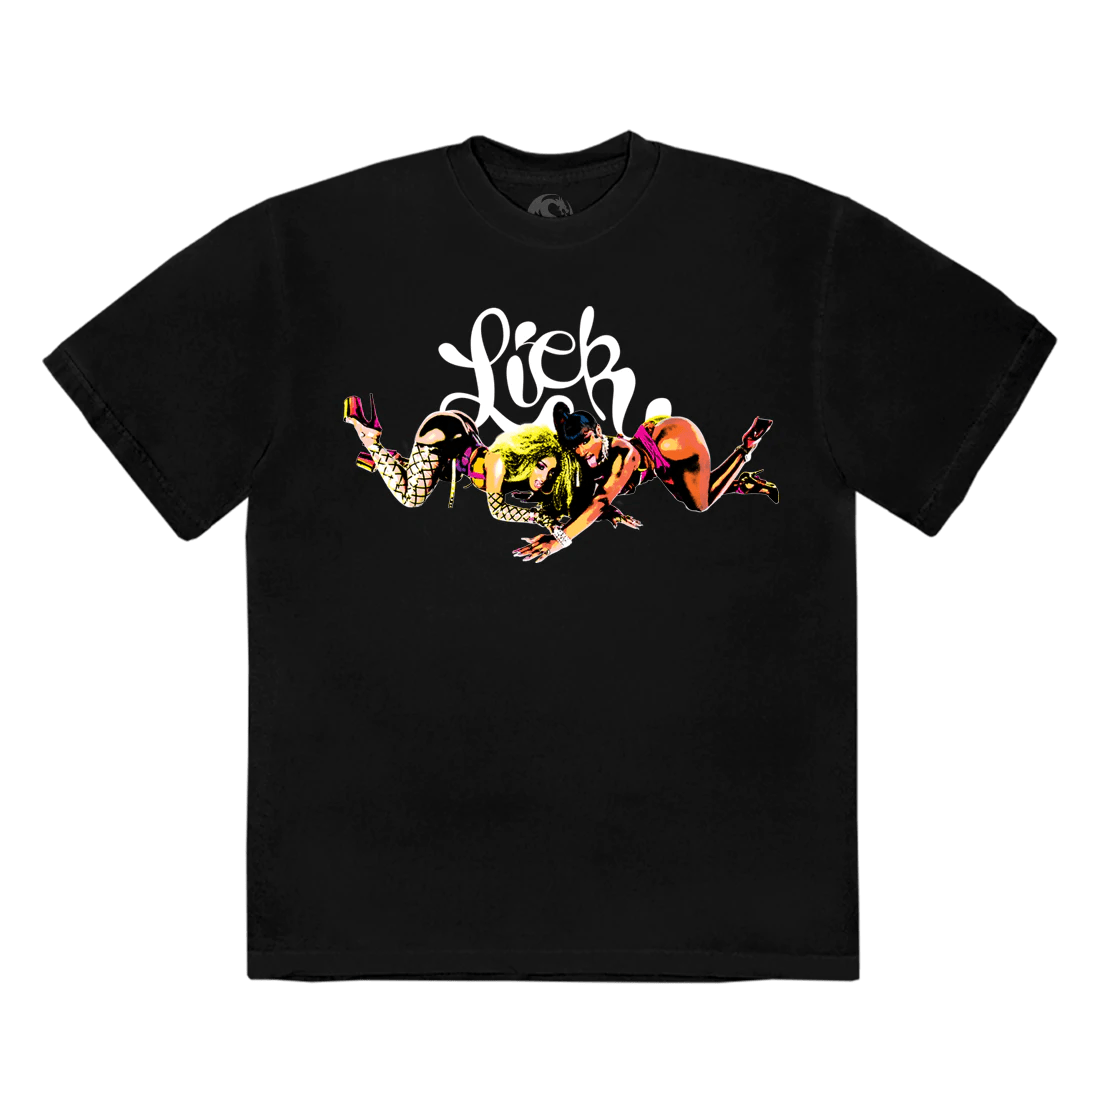 Shenseea Merch Collection - Lick T-Shirt